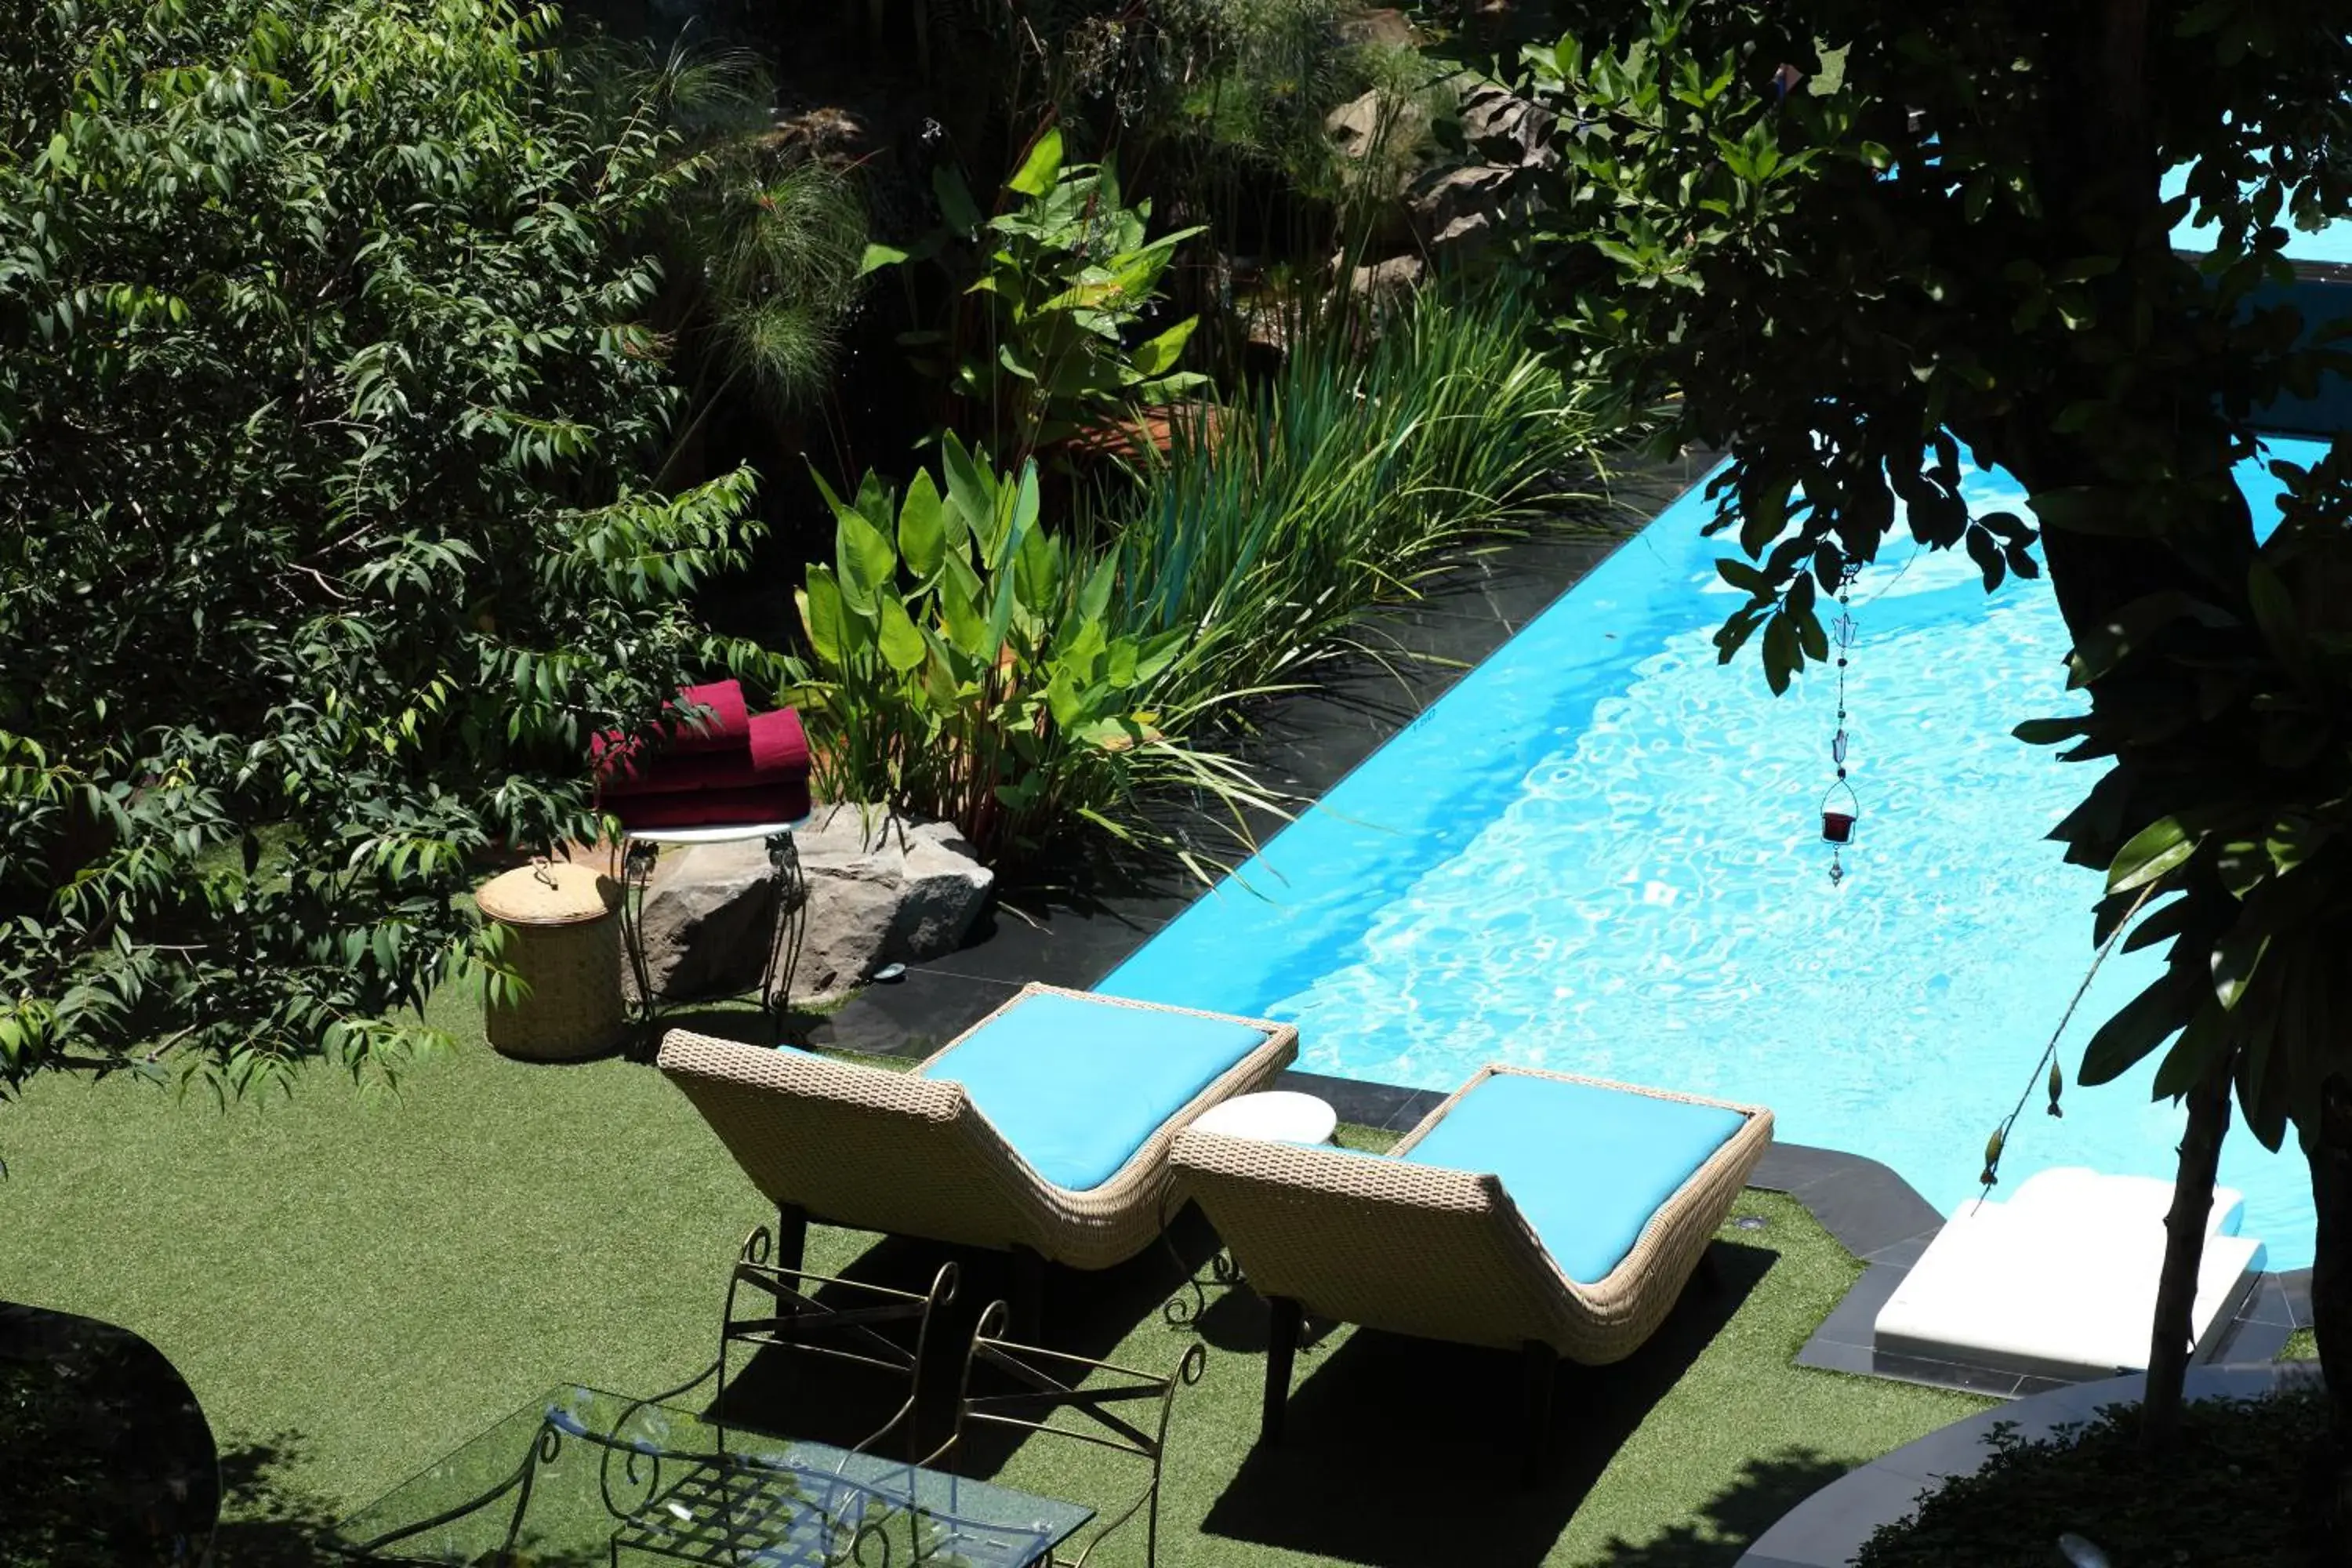 Swimming Pool in Kodchasri Thani Hotel